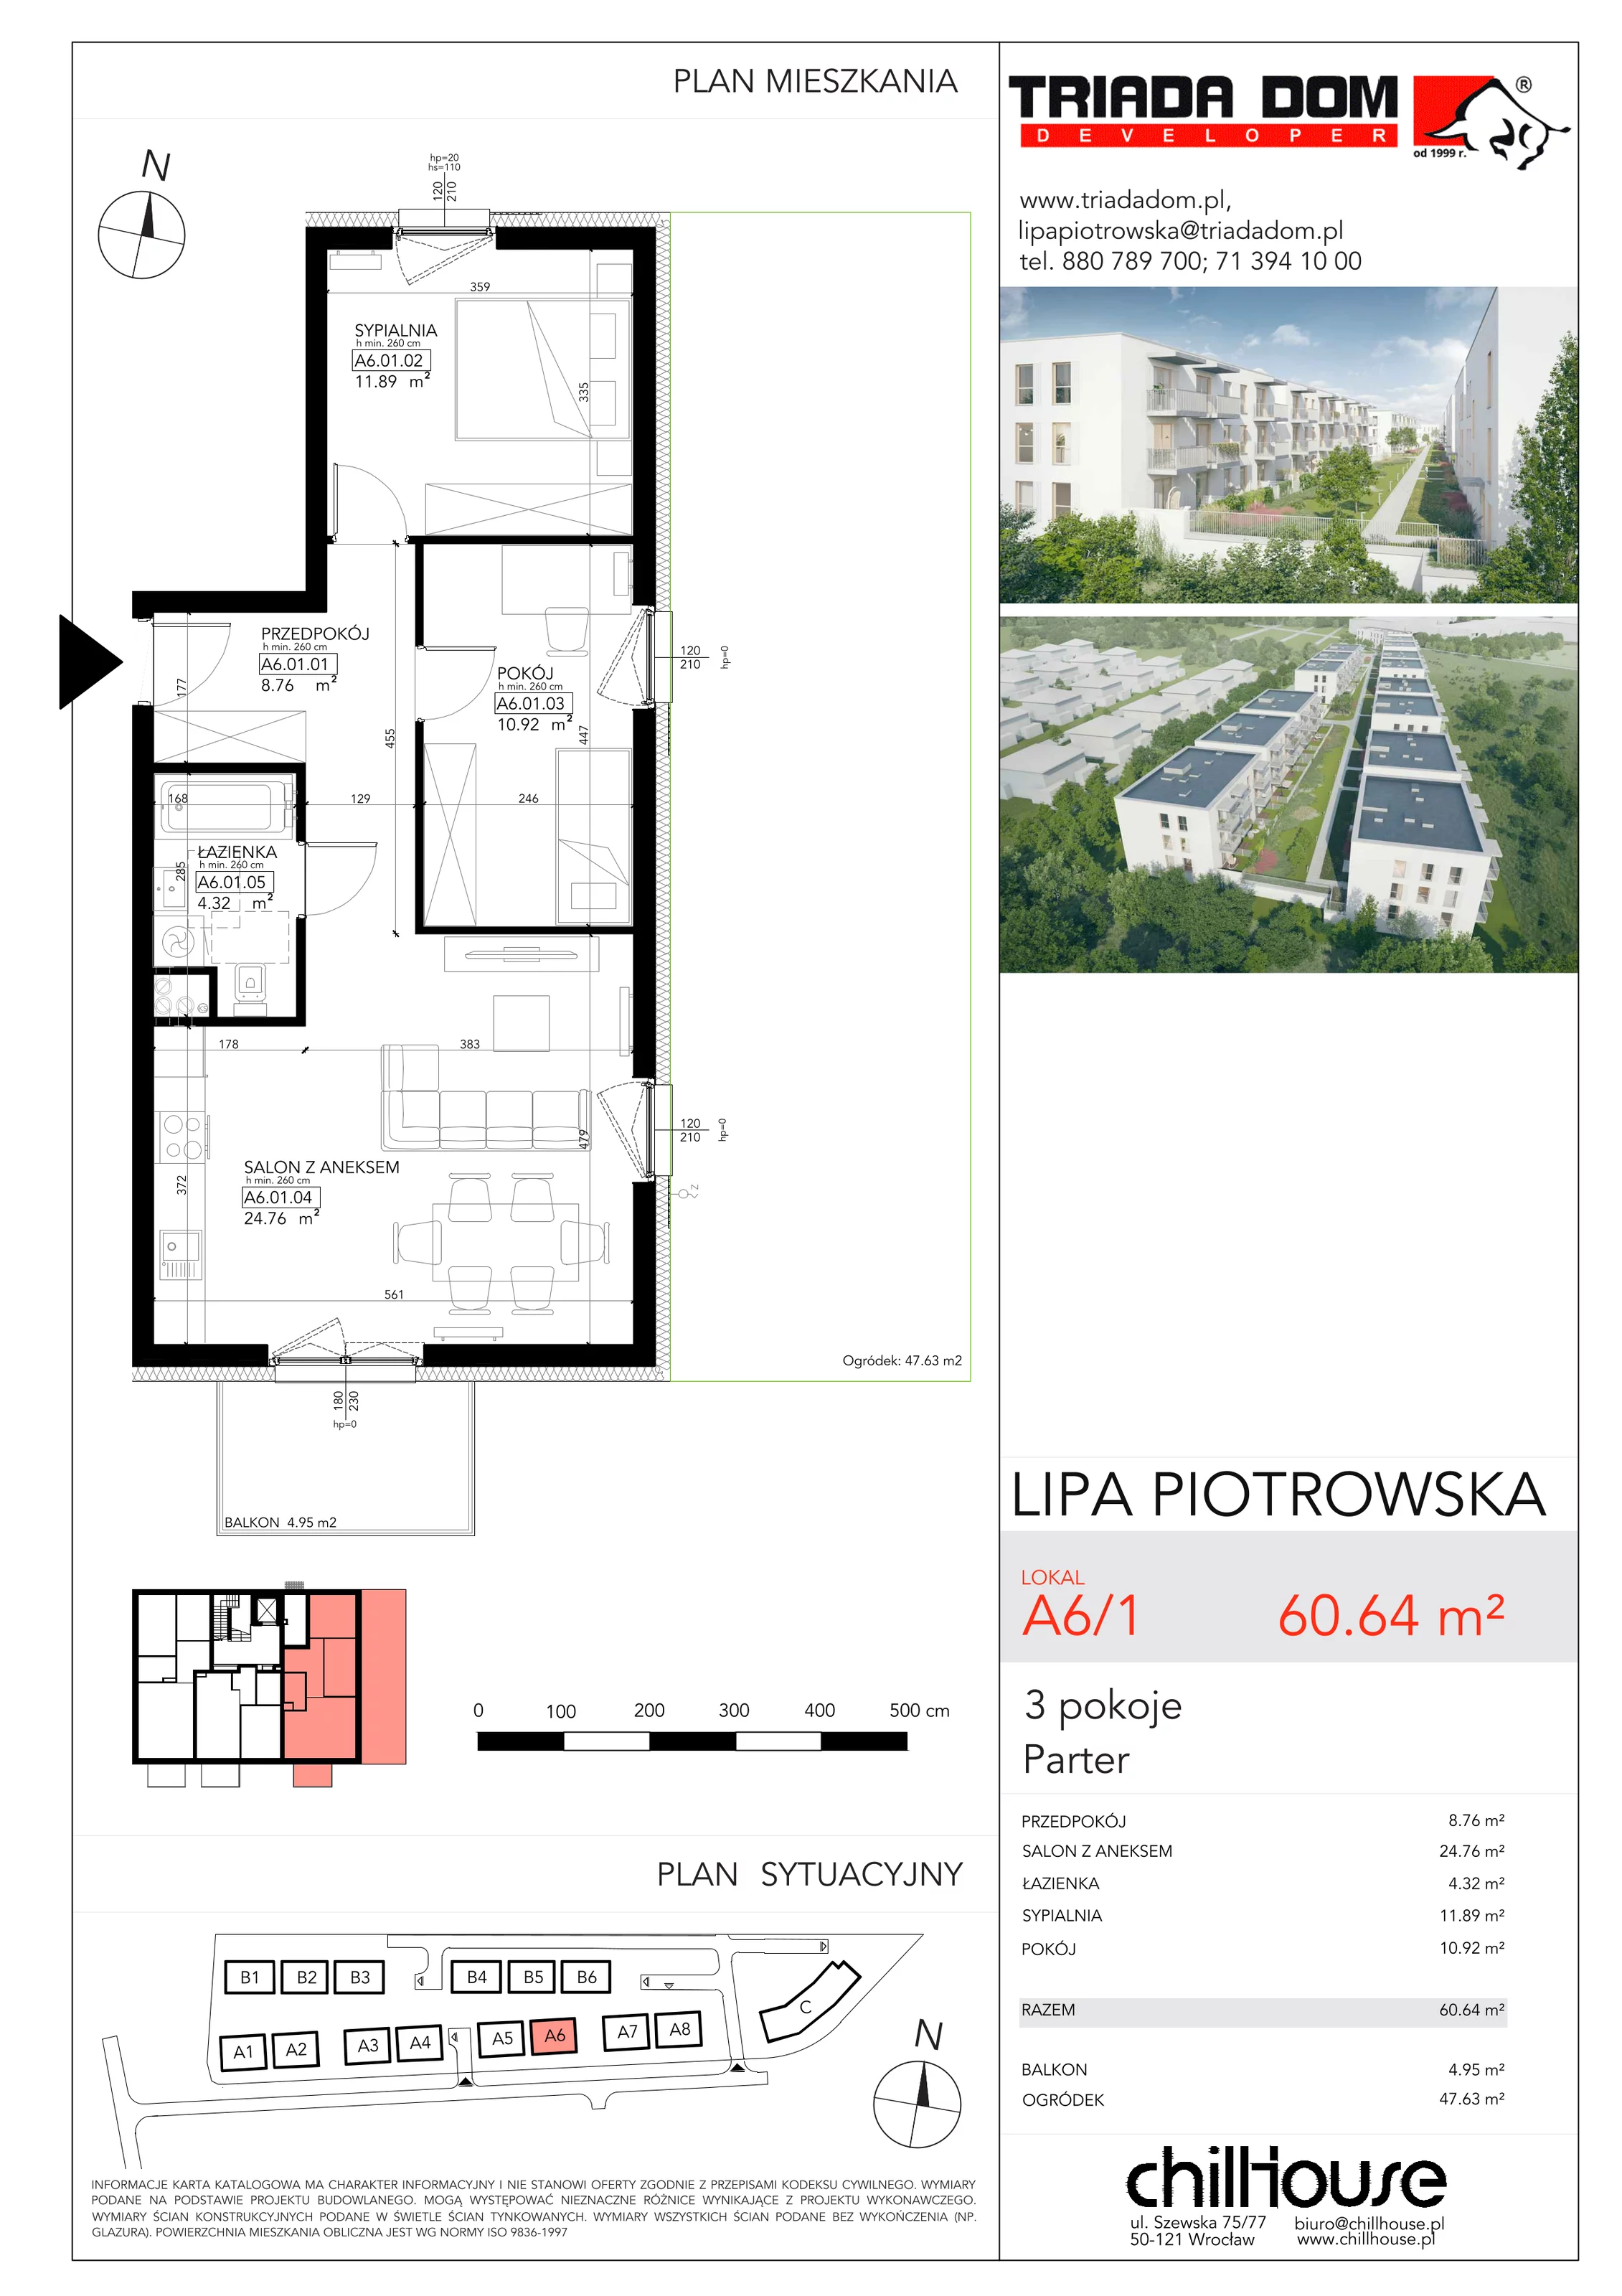 Mieszkanie 60,64 m², parter, oferta nr A61, Lipa Piotrowska, Wrocław, Lipa Piotrowska, ul. Lawendowa / Melisowa